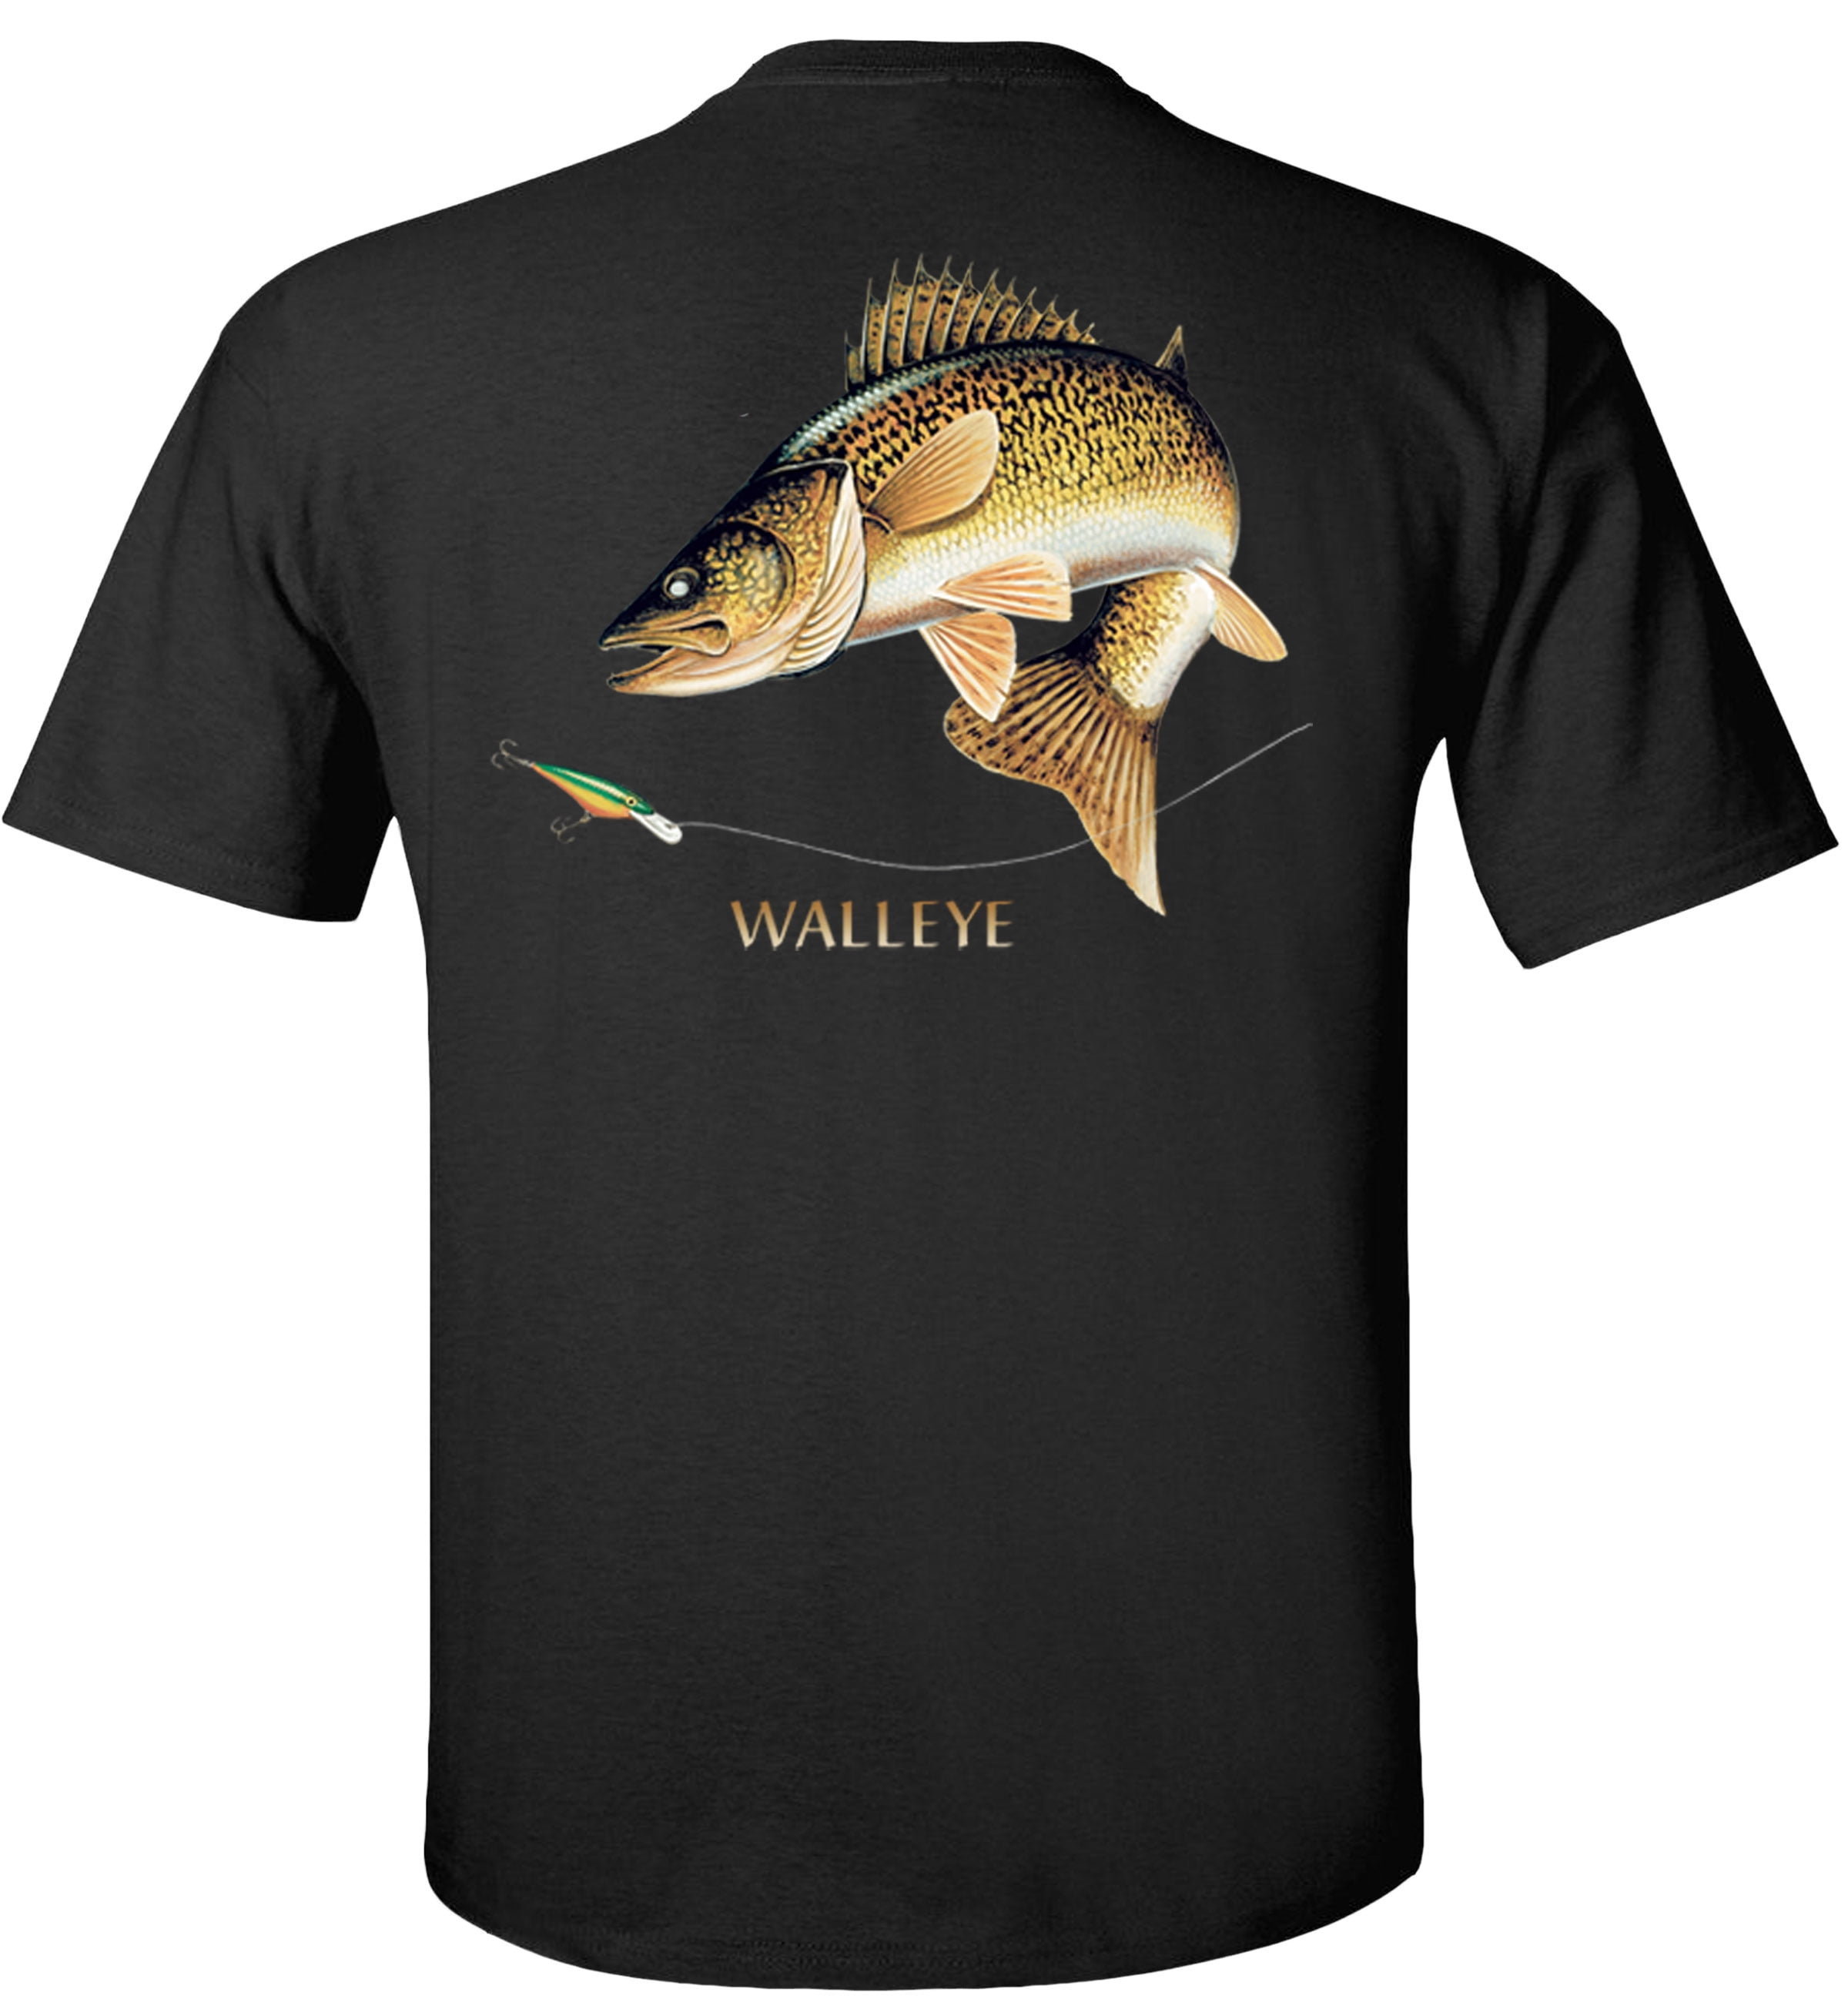 Fair Game Walleye Fishing T-Shirt, combination profile, Fishing